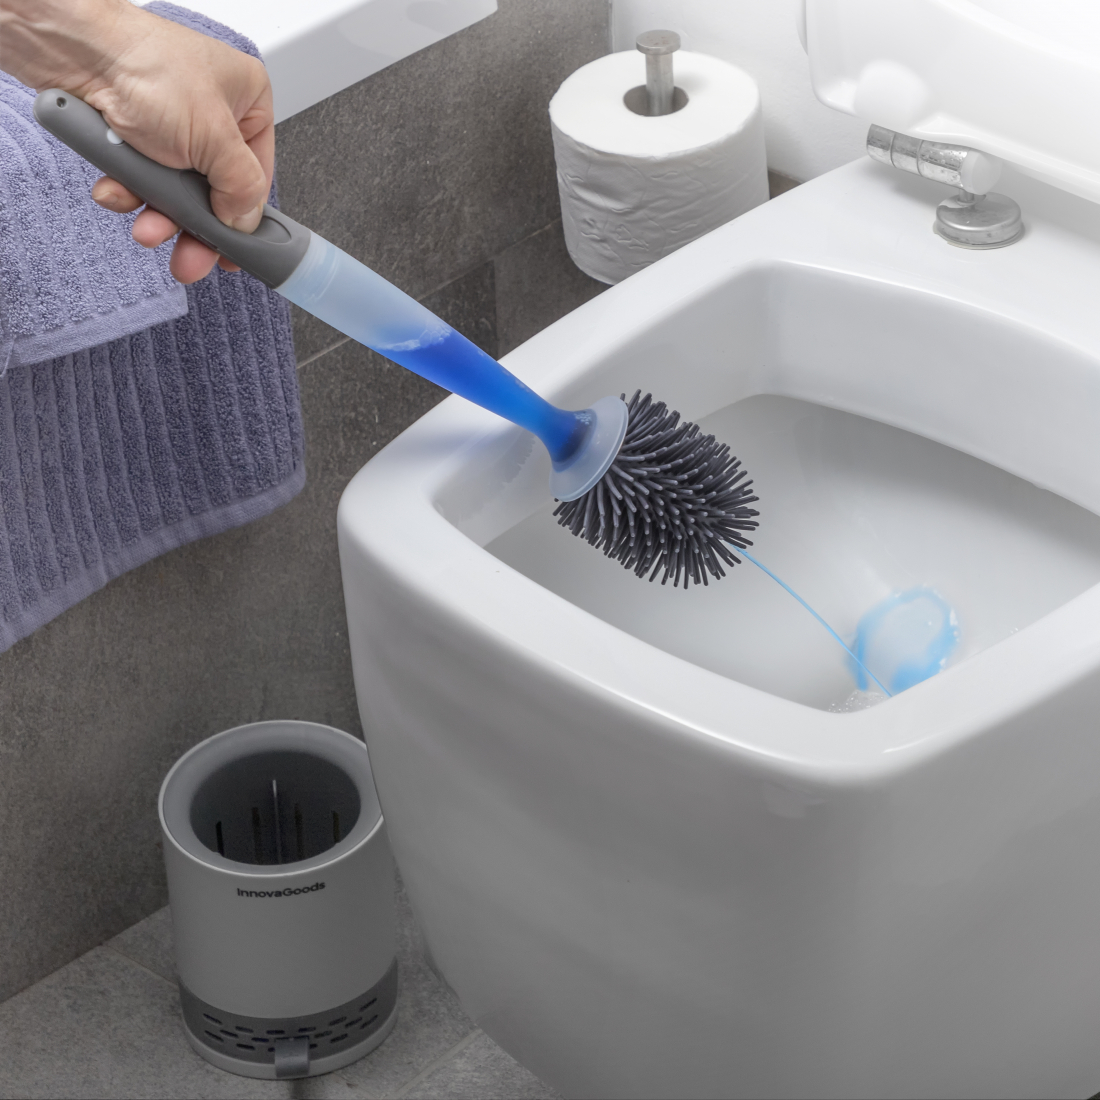 Toilet Brush With Detergent Dispenser Bruilet